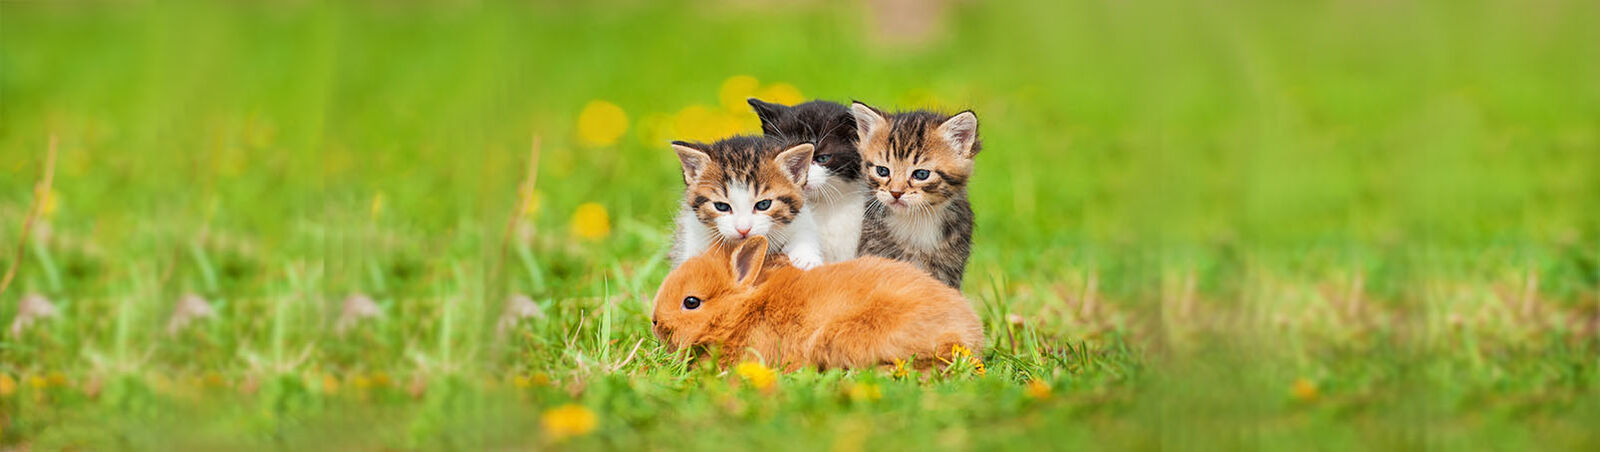 Drei Katzenbabys sitzen hinter einem jungen Kaninchen.